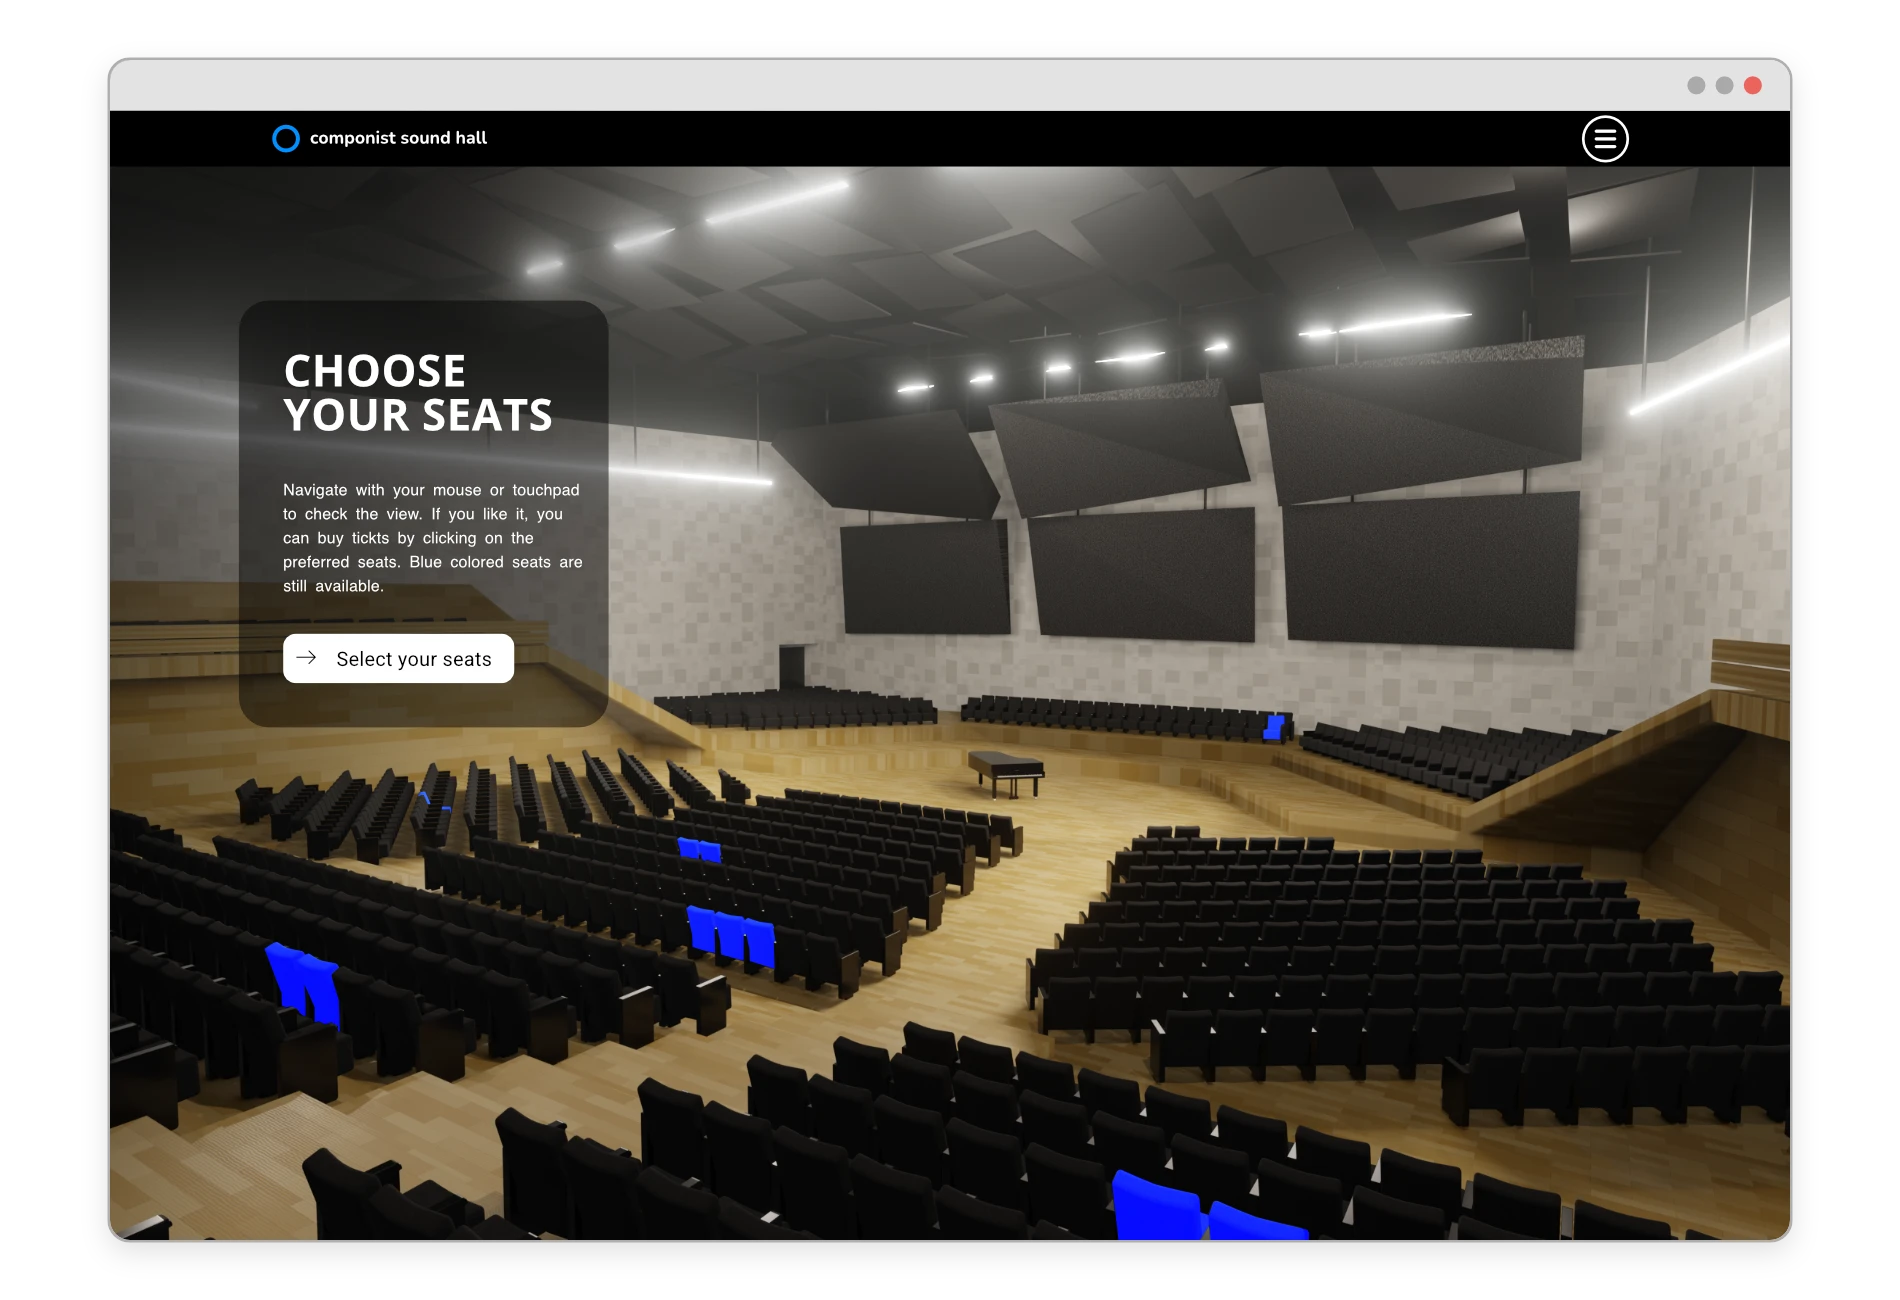 Darstellung eines 3D Konzersaal oder Theaters mit interaktiver Buchungsmöglichkeit